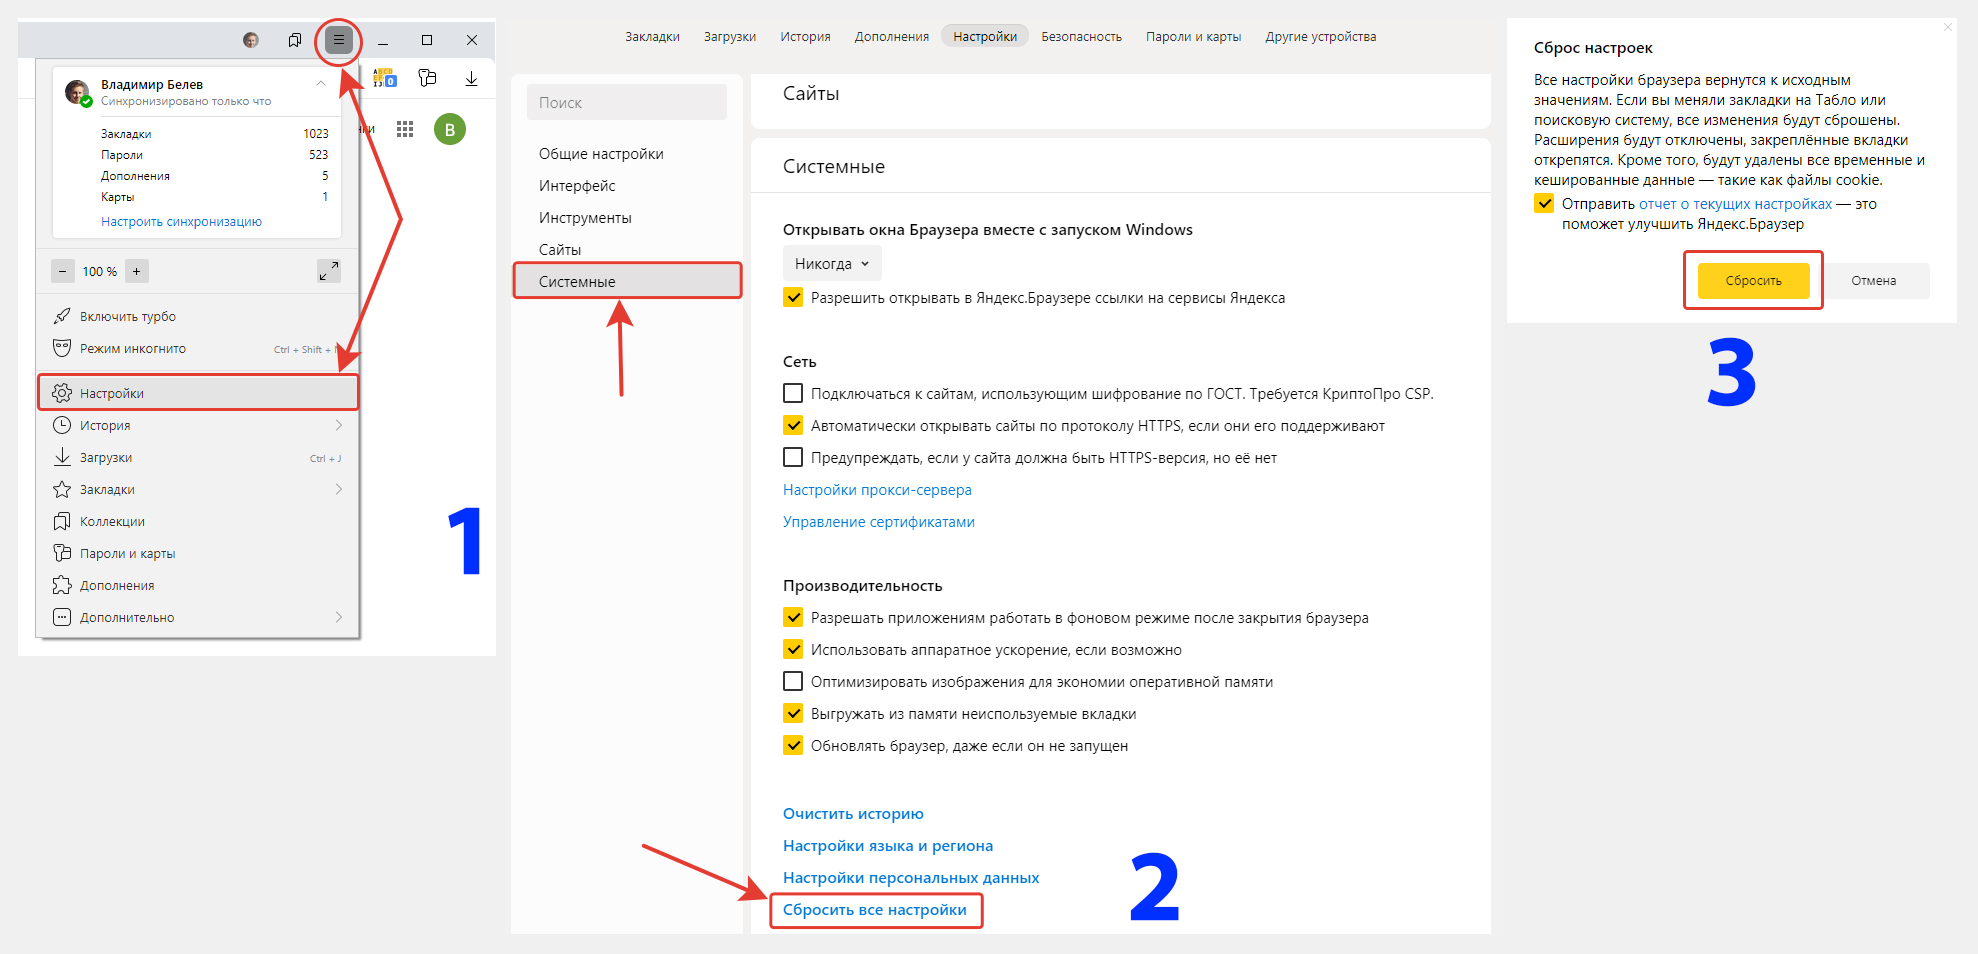 3 изображения к инструкции по сбросу пароля Яндекс: переход в меню, раздел "Системные", пункт "сбросить все настройки"